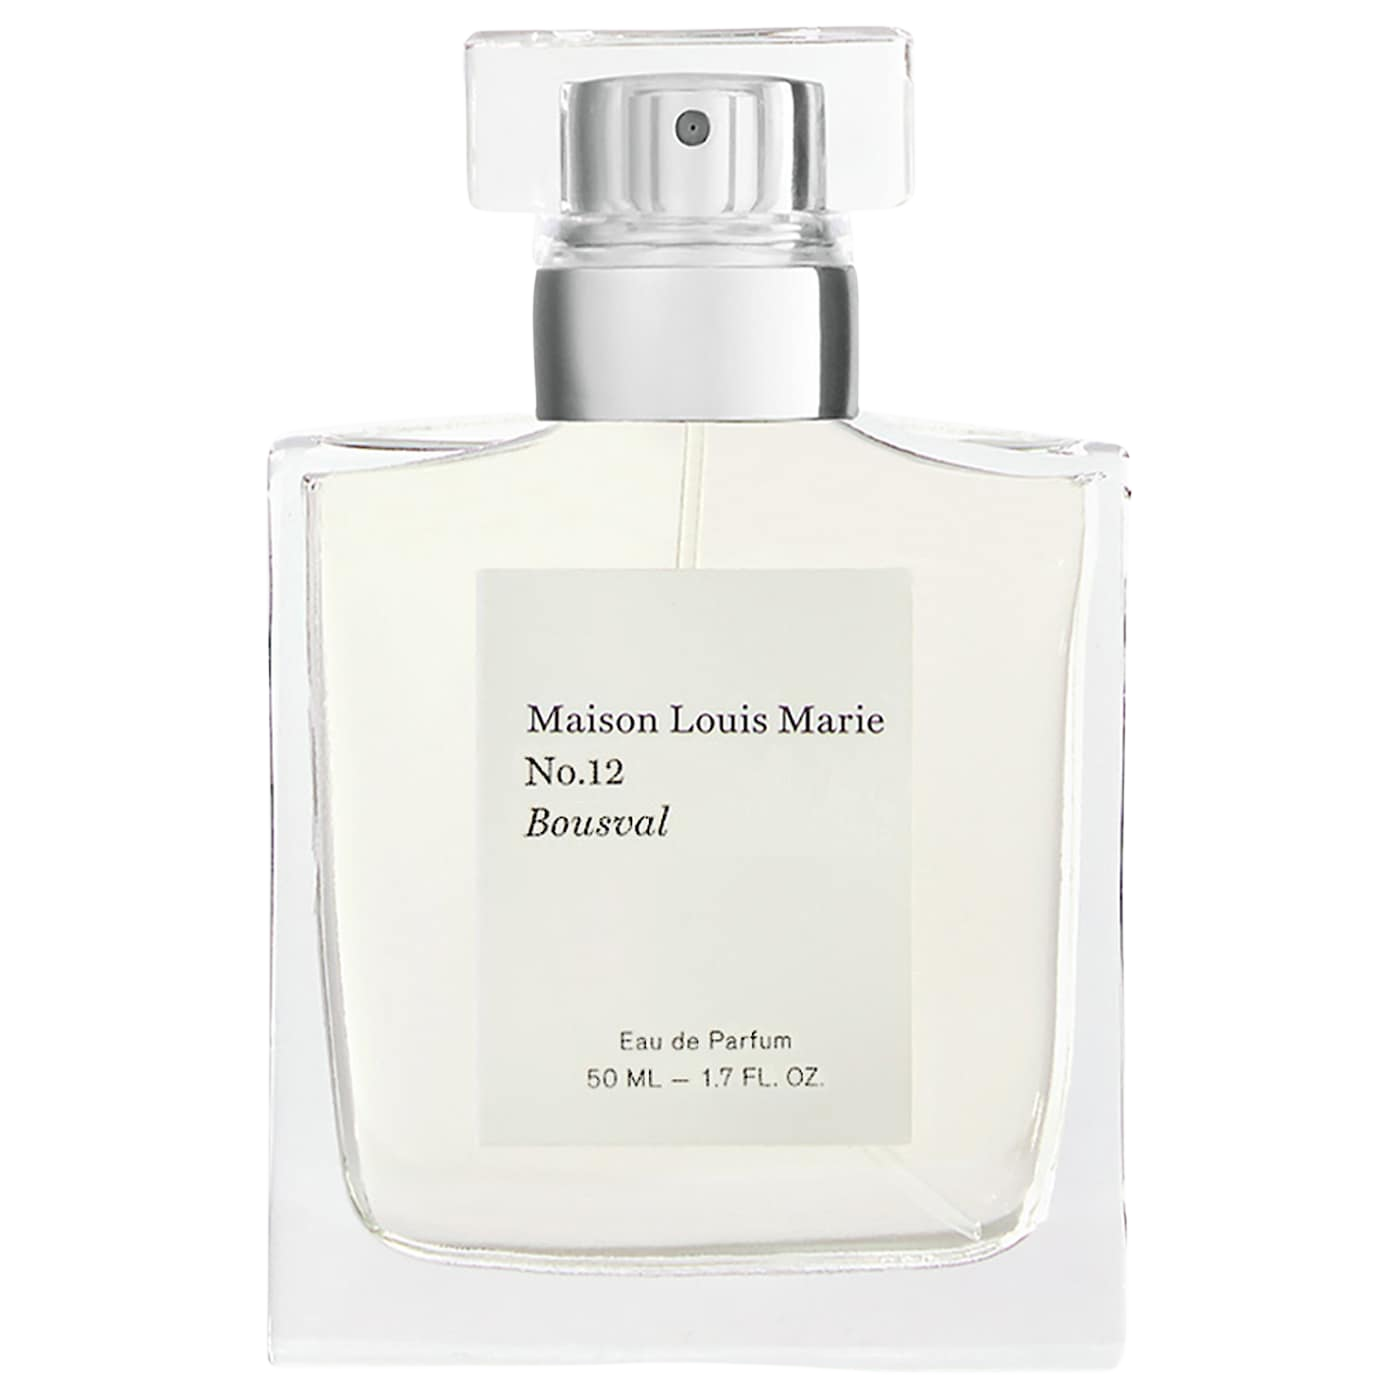 Maison Louis Marie No.12 Bousval Eau De Parfum